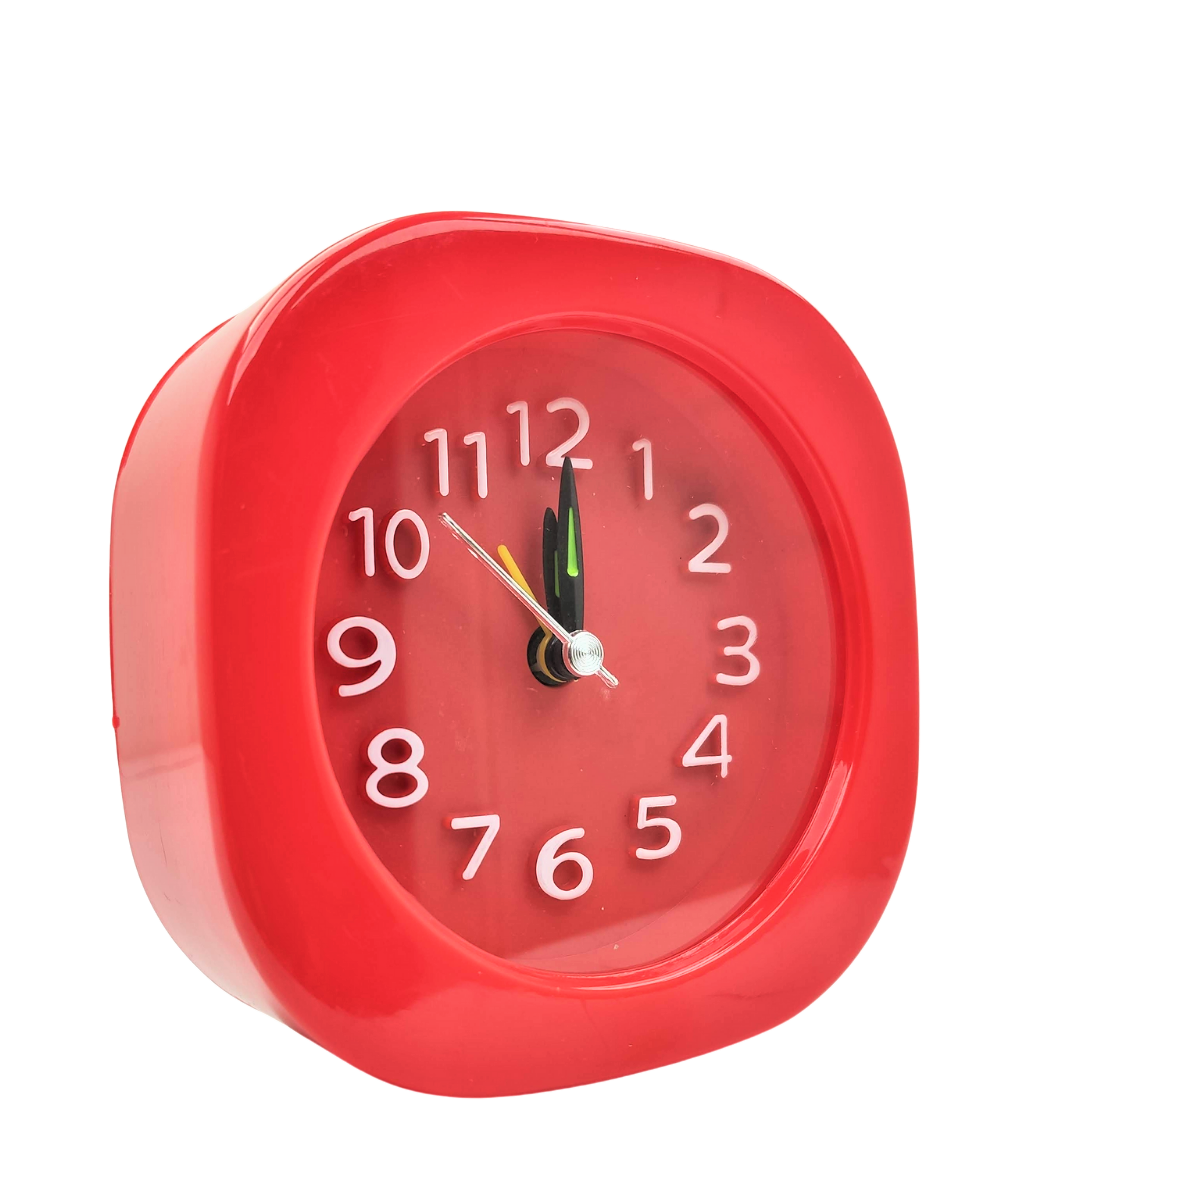 Relógio Despertador Retrô de Cabeceira Alarme Analogico Colorido Infantil Pilha Vermelho - 2